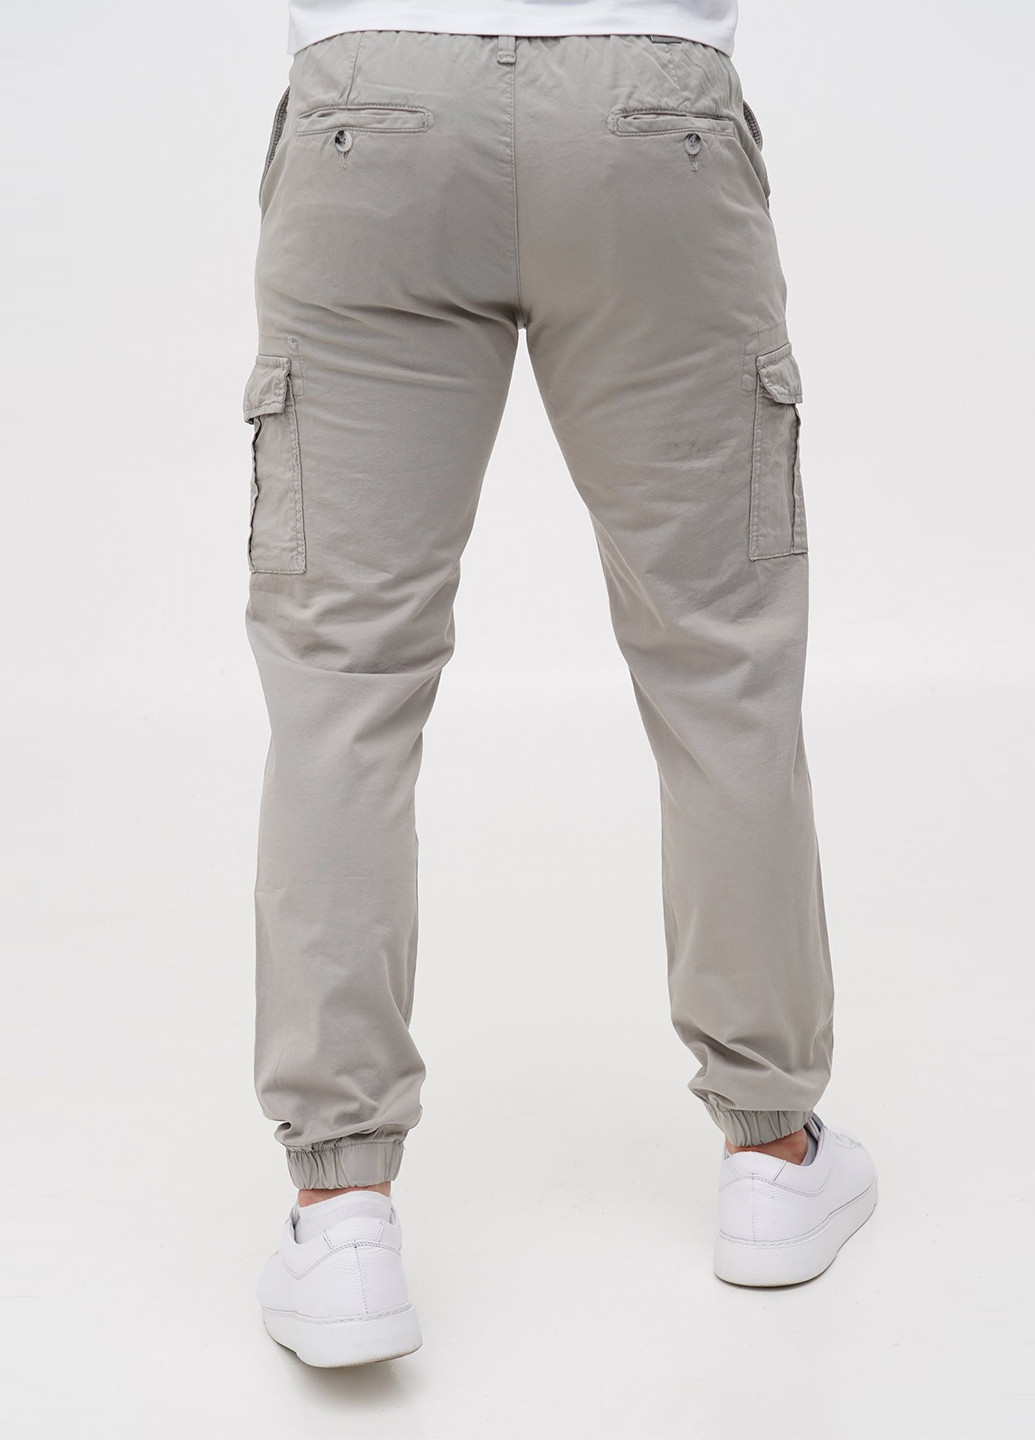 Светло-серые кэжуал демисезонные джоггеры, карго брюки Trend Collection